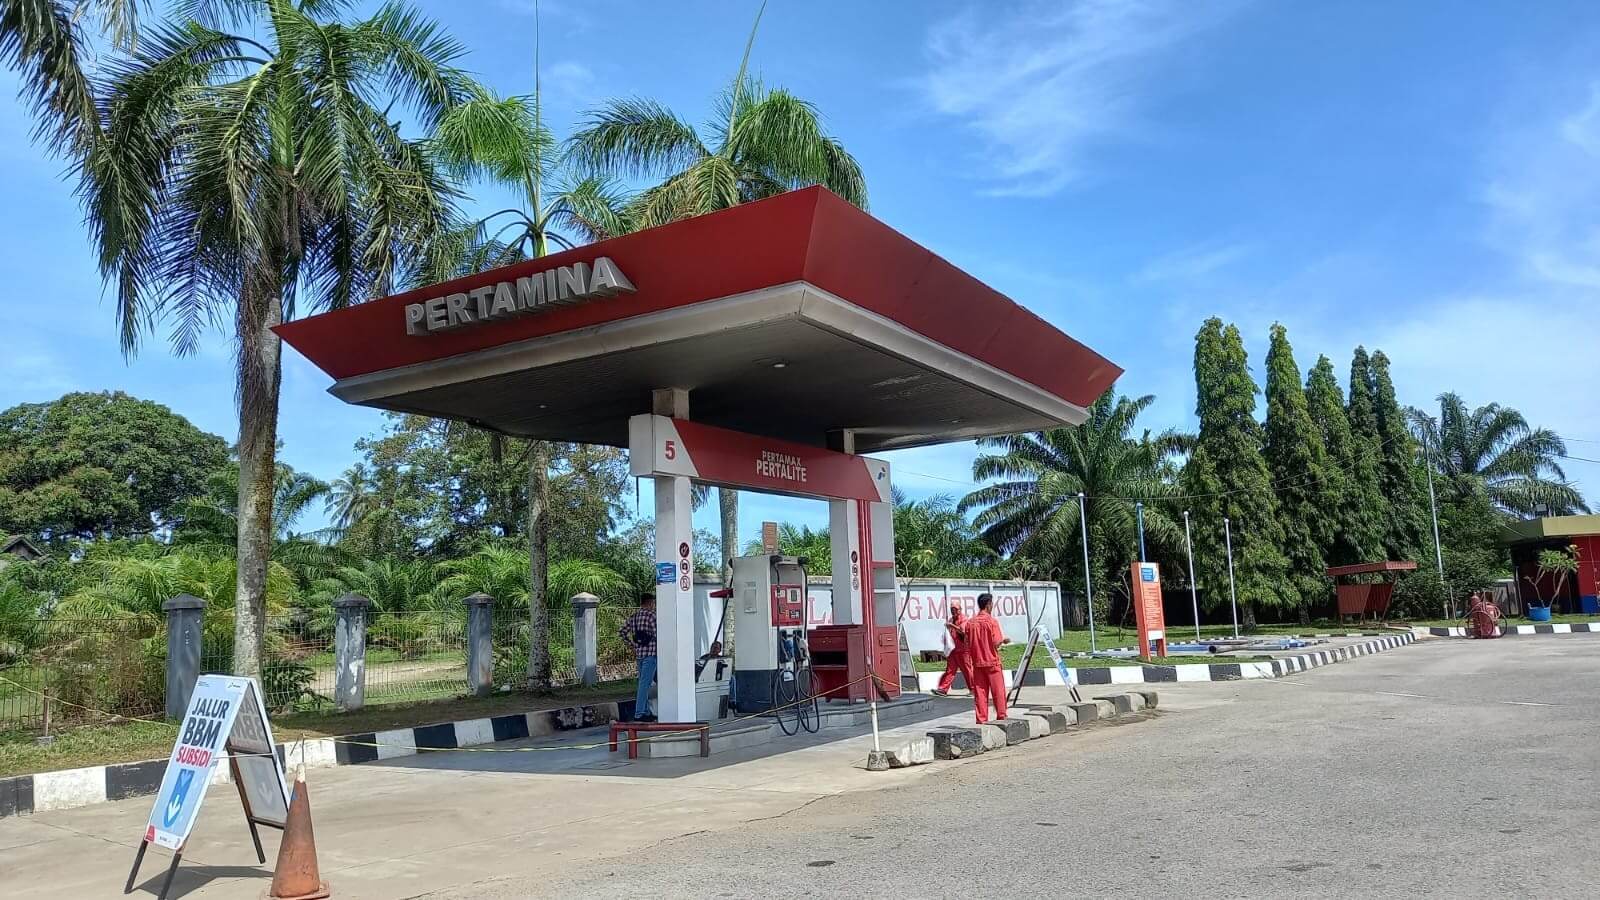 Pertamina Perintahkan SPBU Tanjung Raman Ditutup, Ada Temuan?